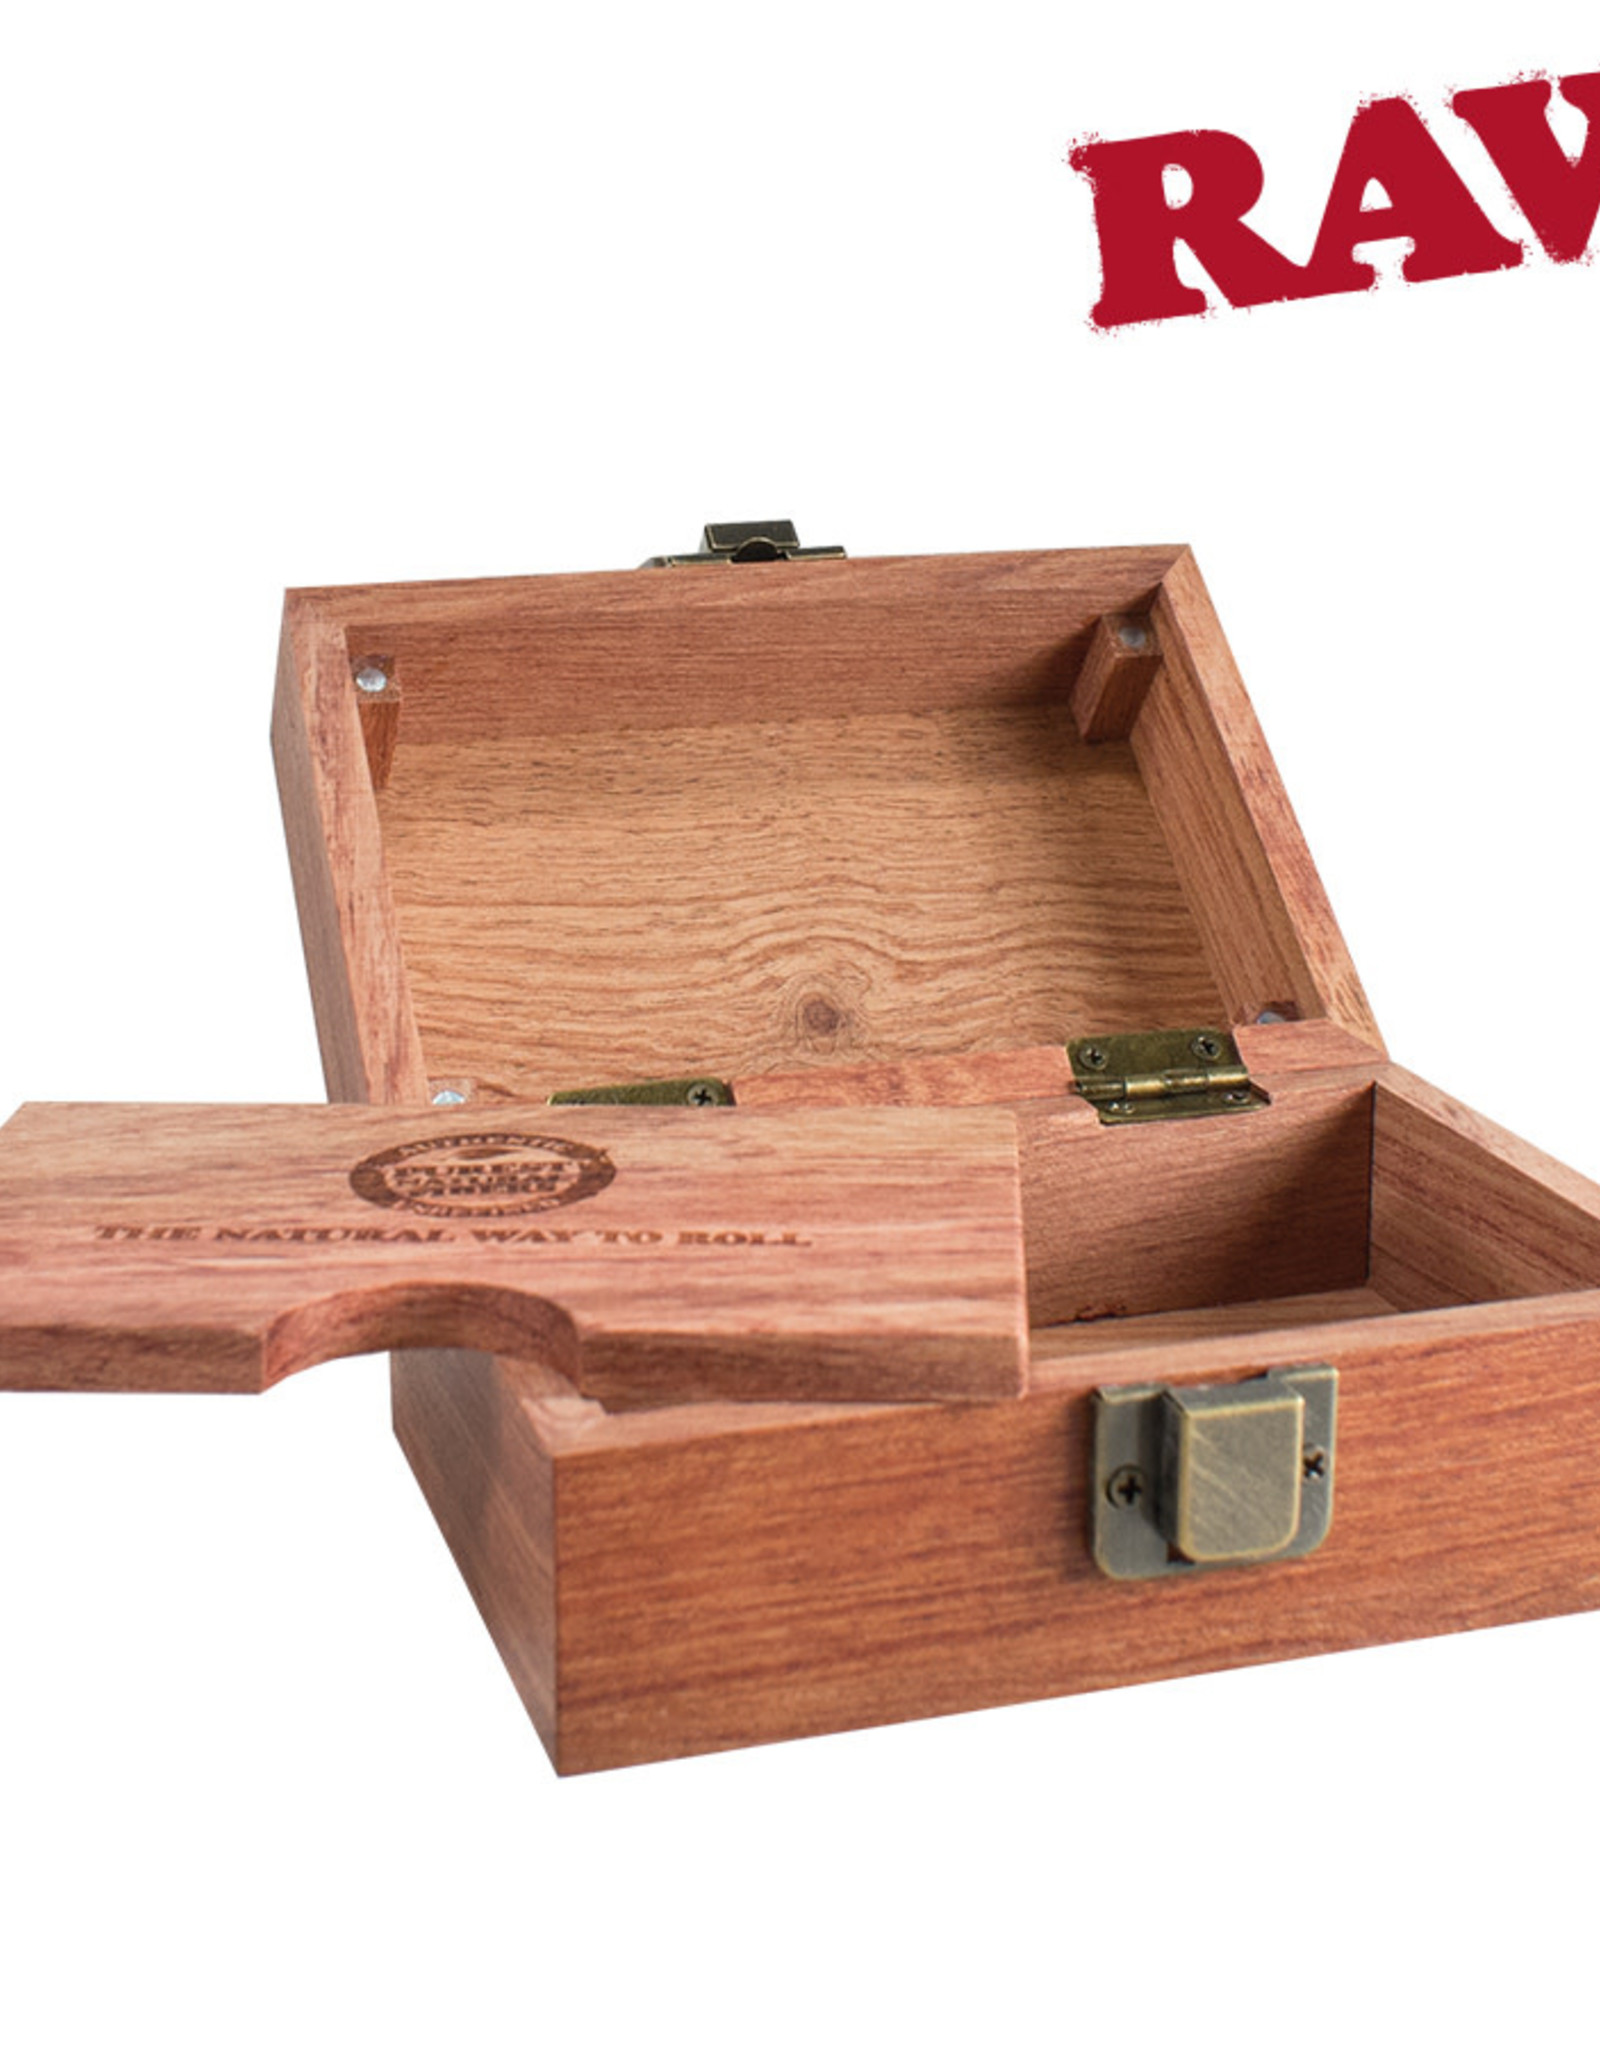 RAW RAW Natural Rosewood Smokers Box